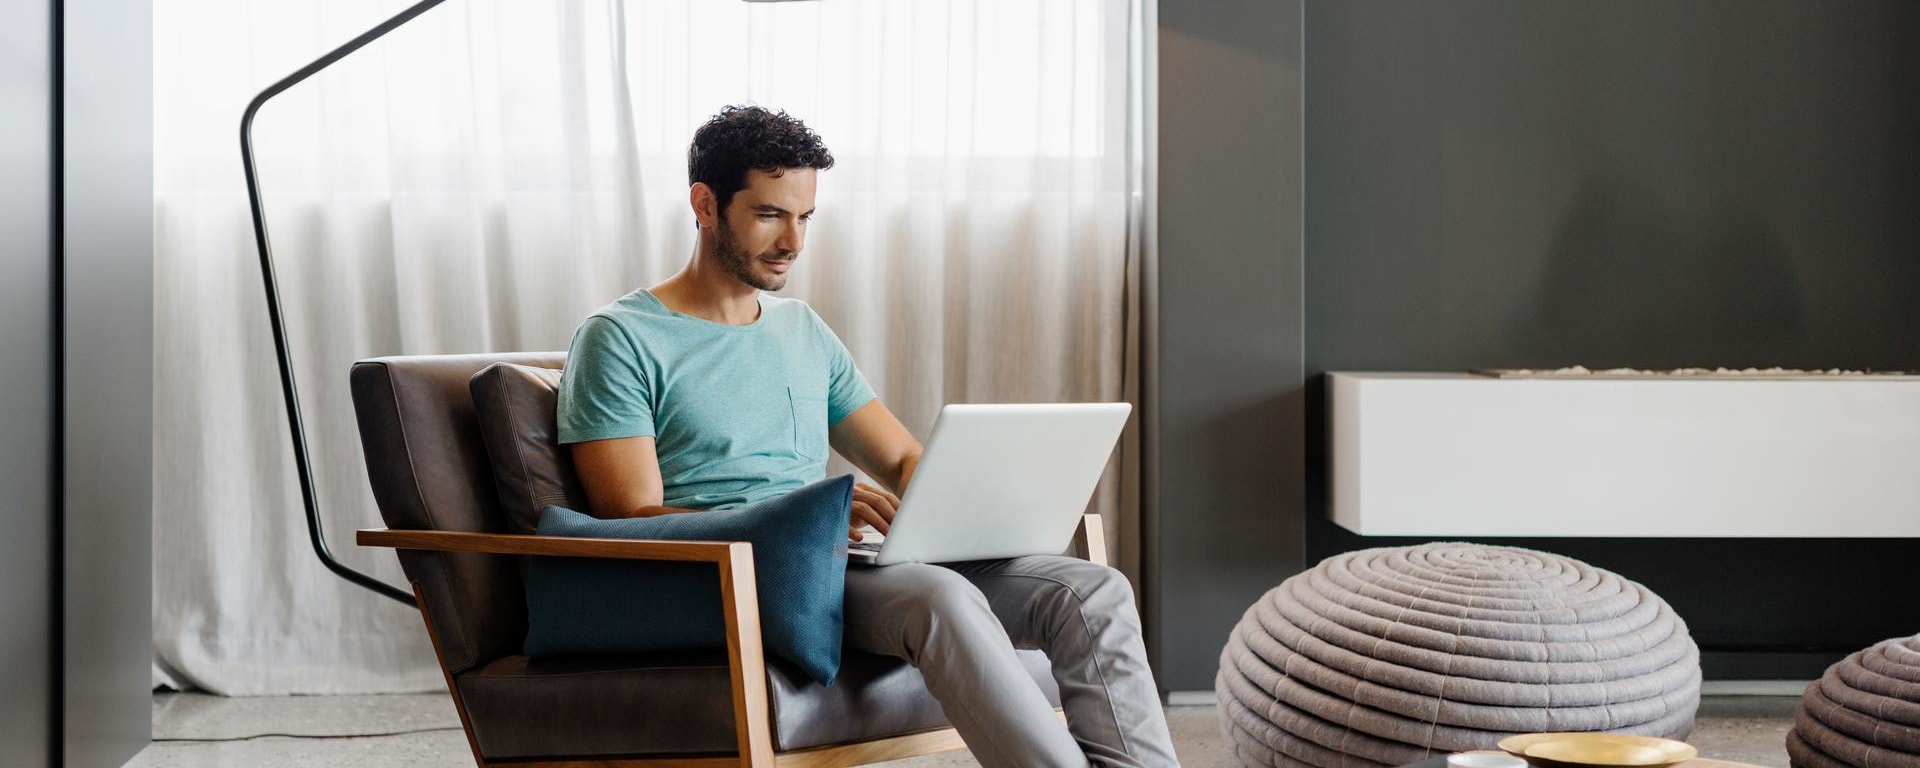 Ein Mann mit blauem Tshirt sitzt daheim vor seinem Laptop und wählt sich in sein E-Banking ein.